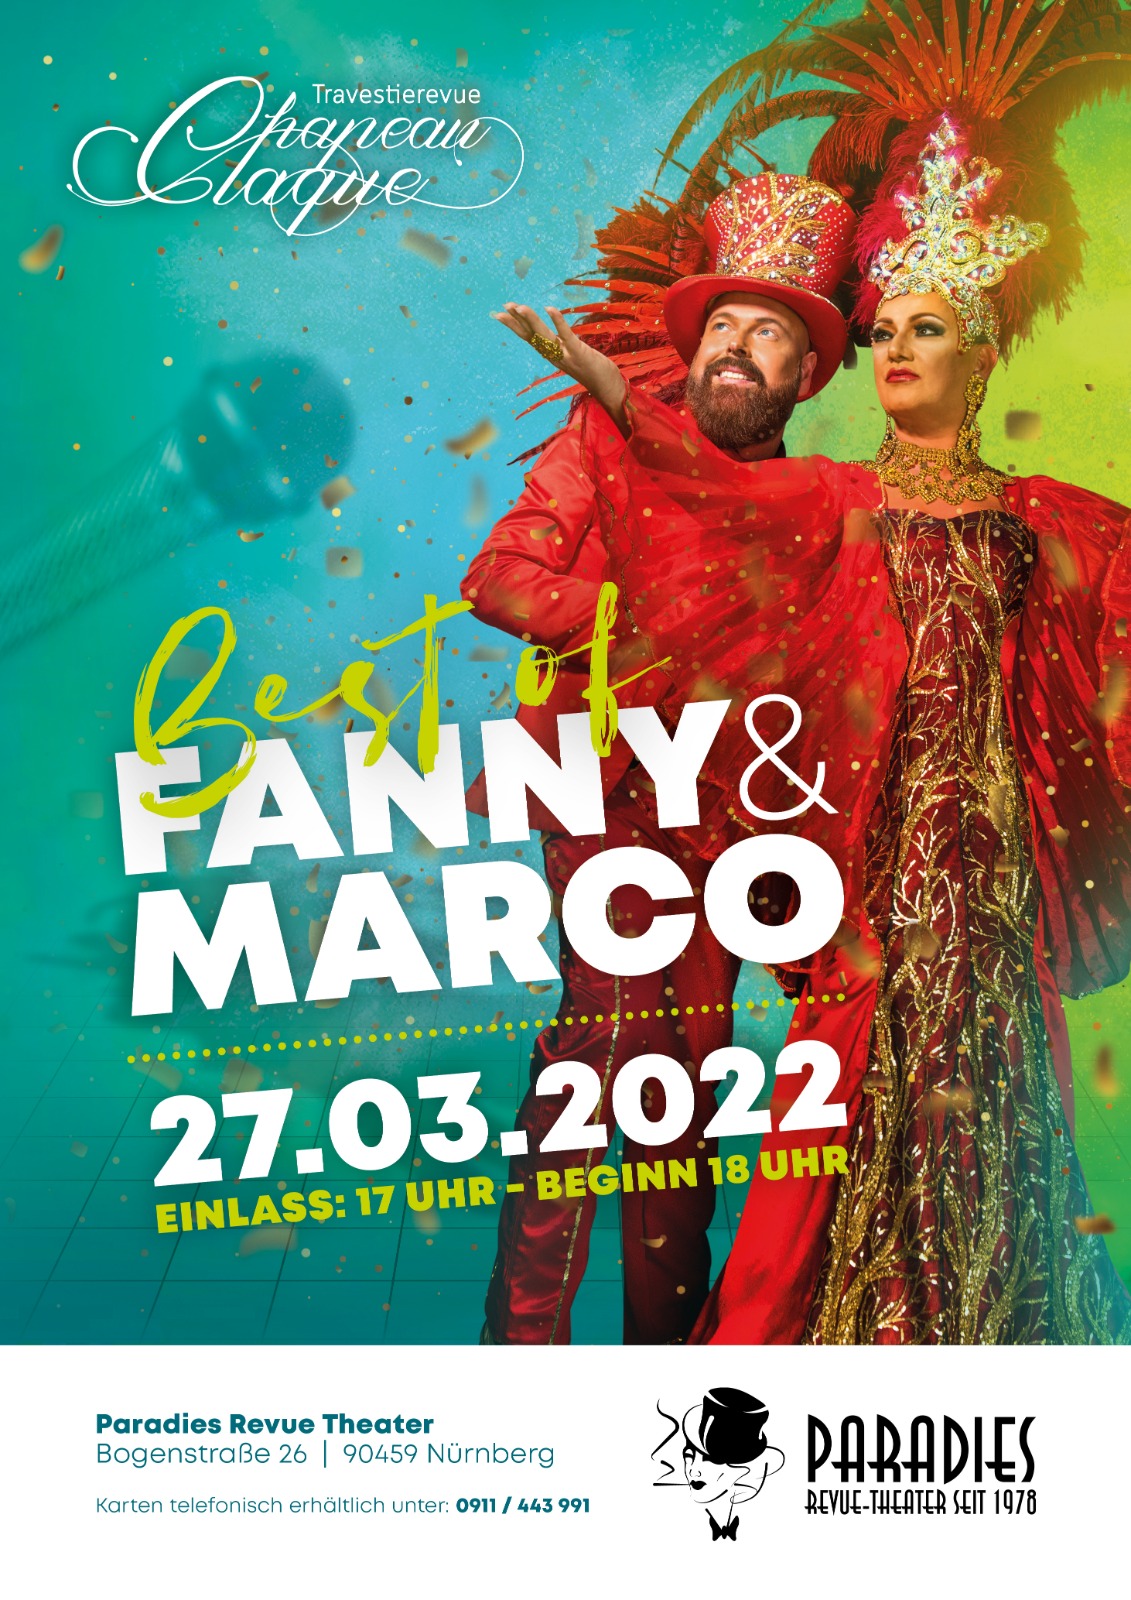 Fanny & Marco